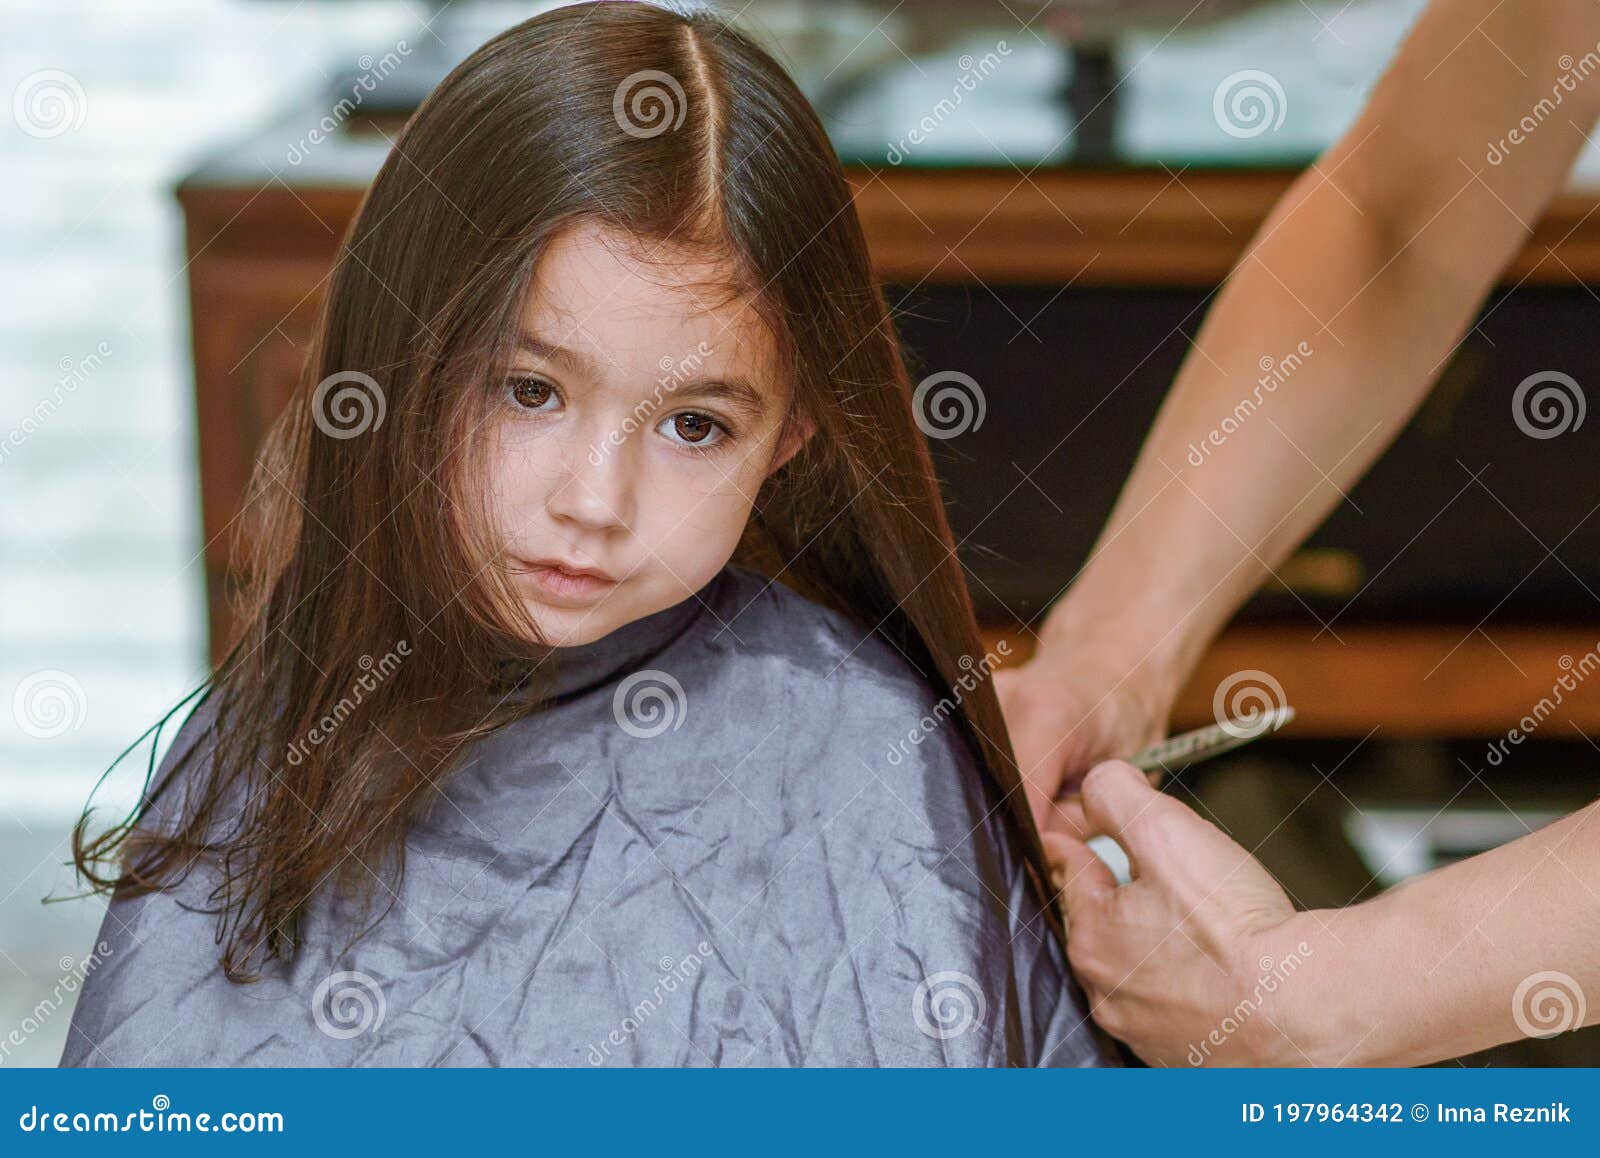 Little Girl Having Her Hair Cut. Little Girl Sitting in Beauty Hair Salon  Style for Children. Stock Photo - Image of hair, head: 197964342